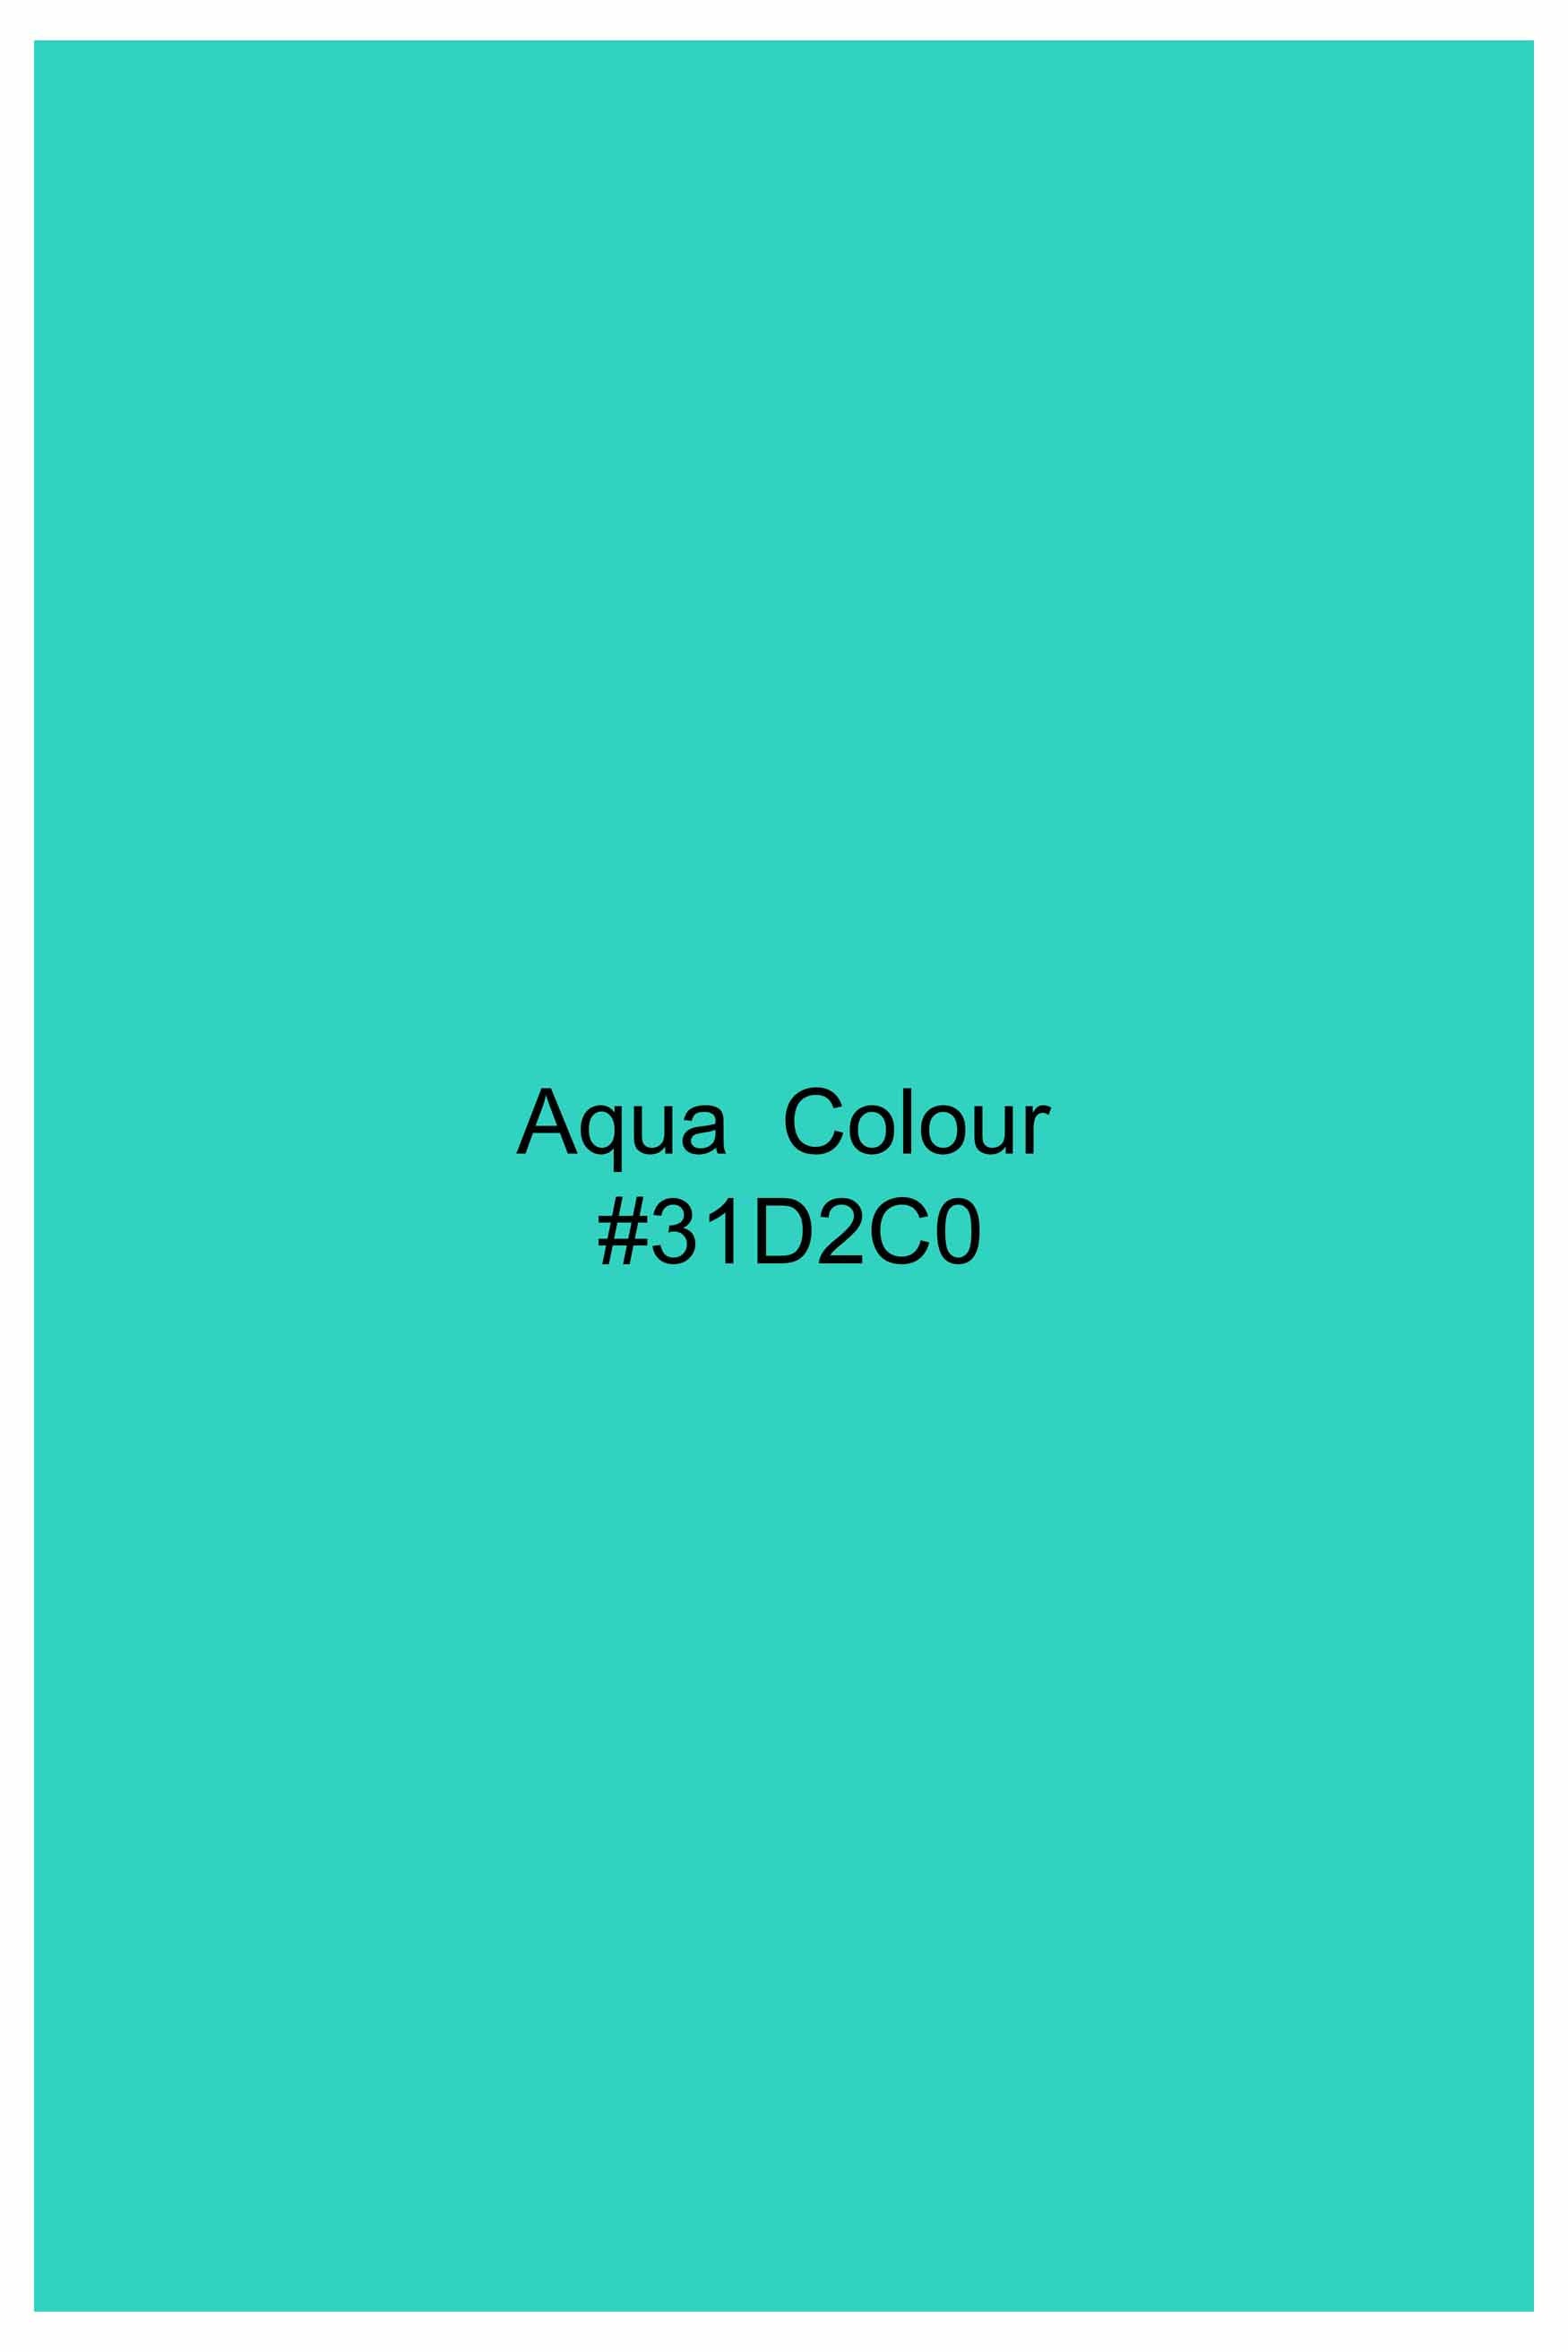 Aqua Blue Dobby Textured Premium Giza Cotton Shirt